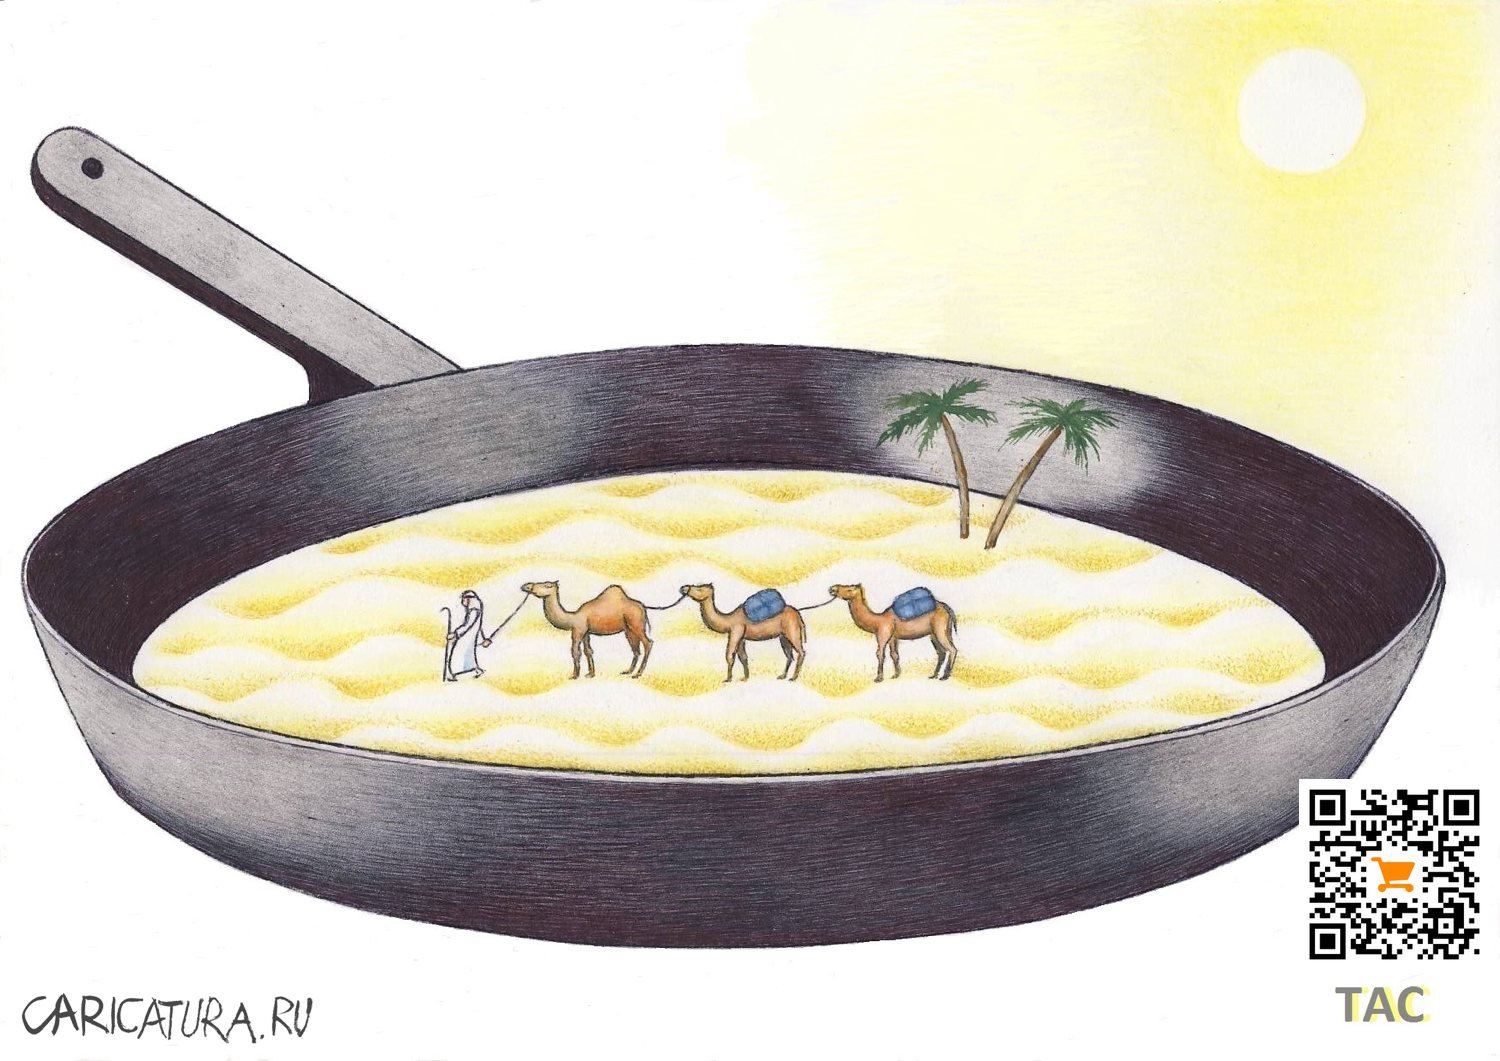 Карикатура "Солнце жарит", Александр Троицкий